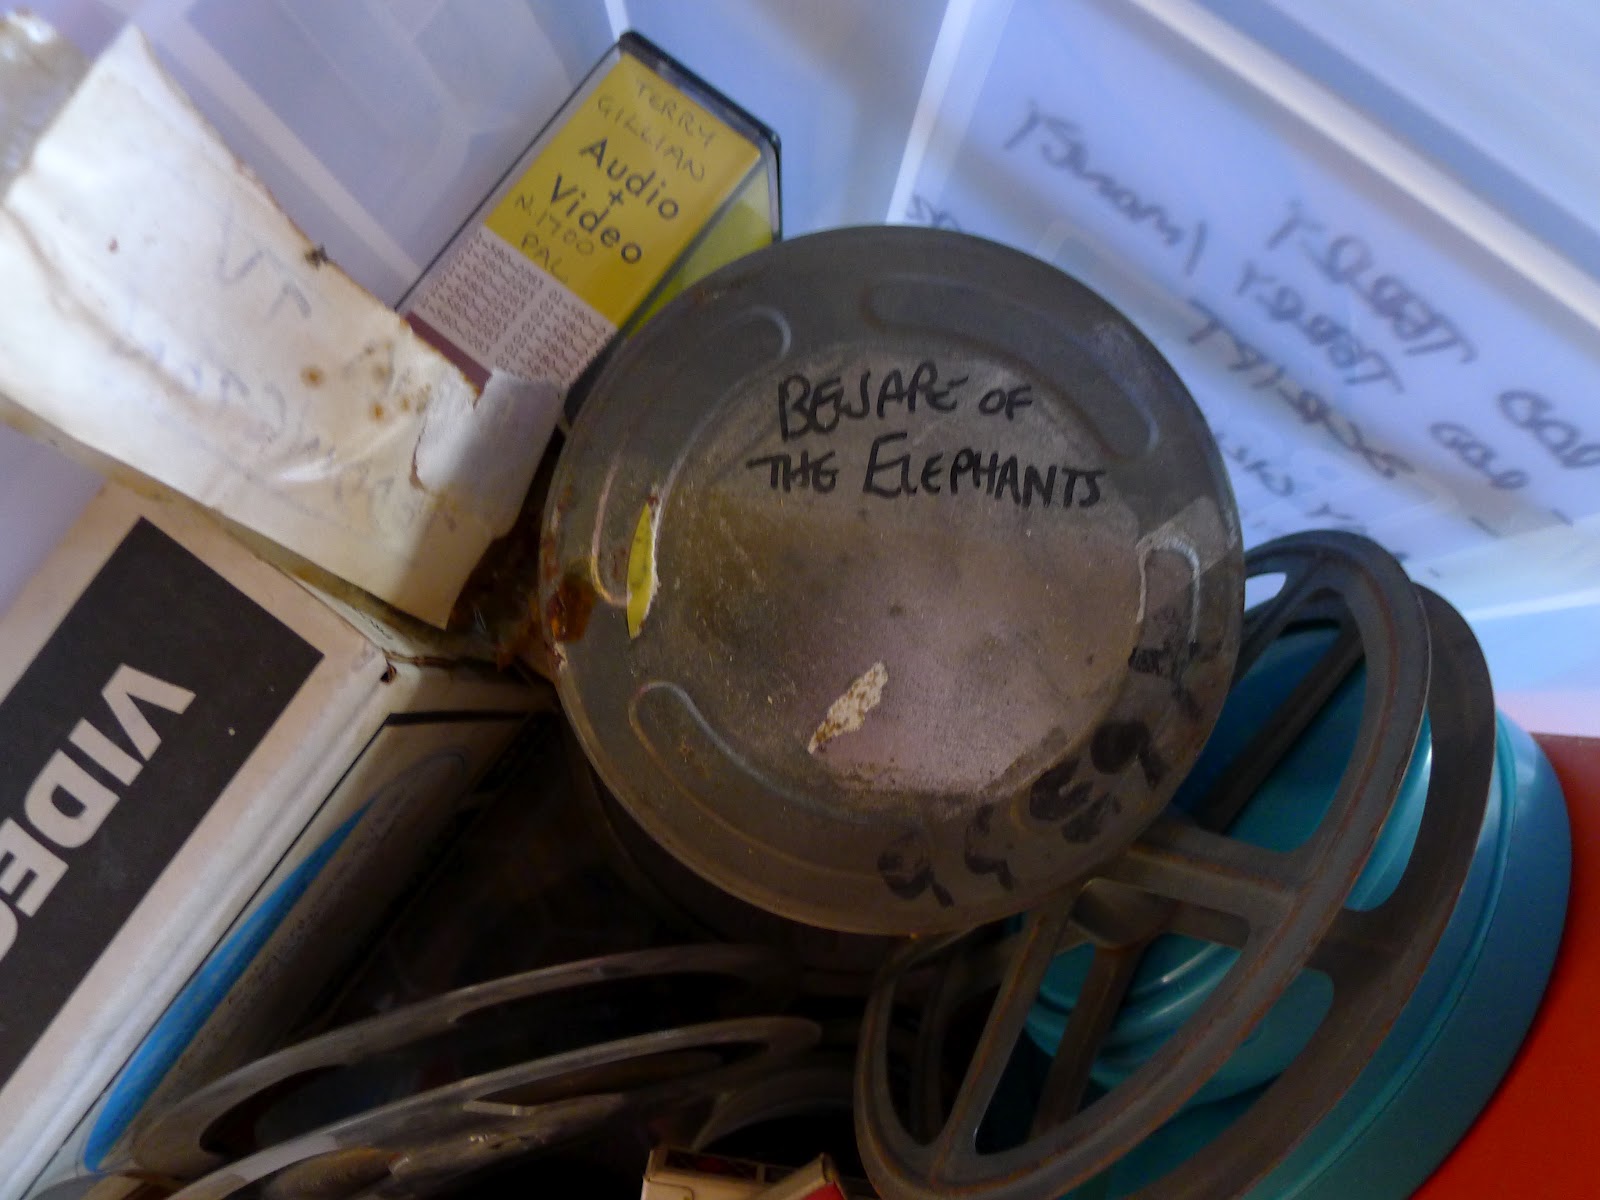 Rolo de filme com o curta produzido por Gillian antes da fama, o Beware of the Elephant